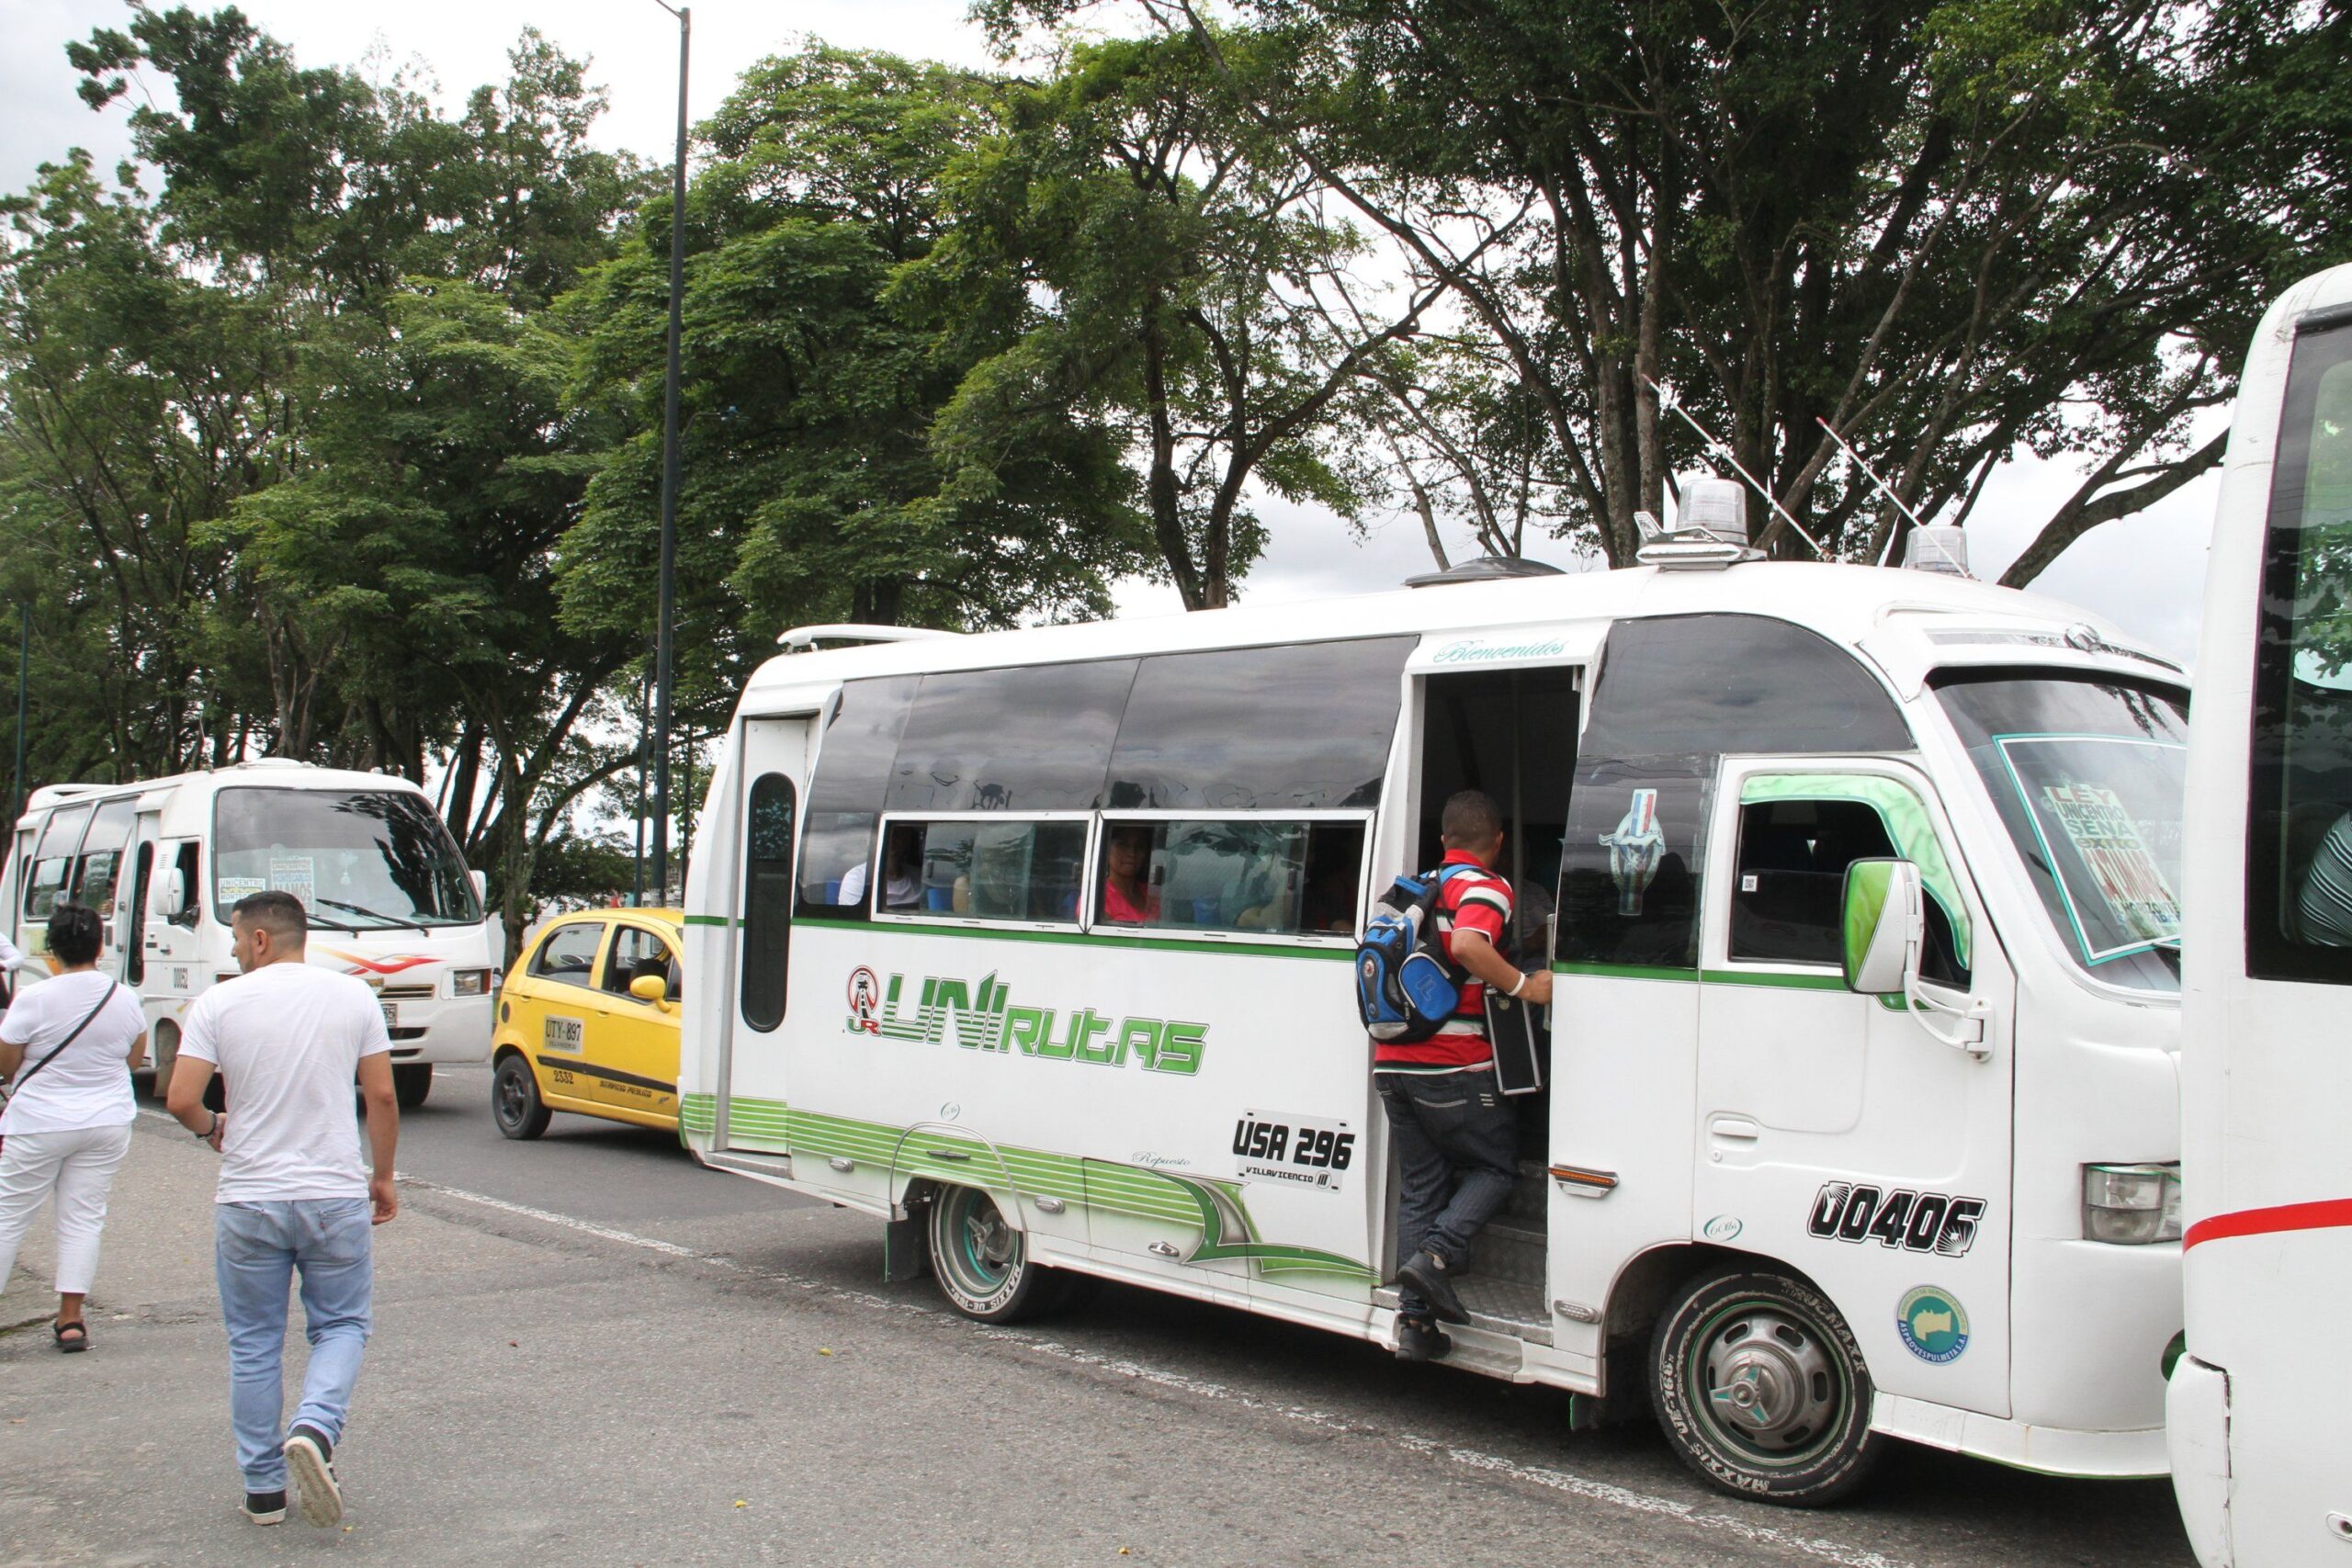 Sube $200 la tarifa del transporte público en Villavicencio 1